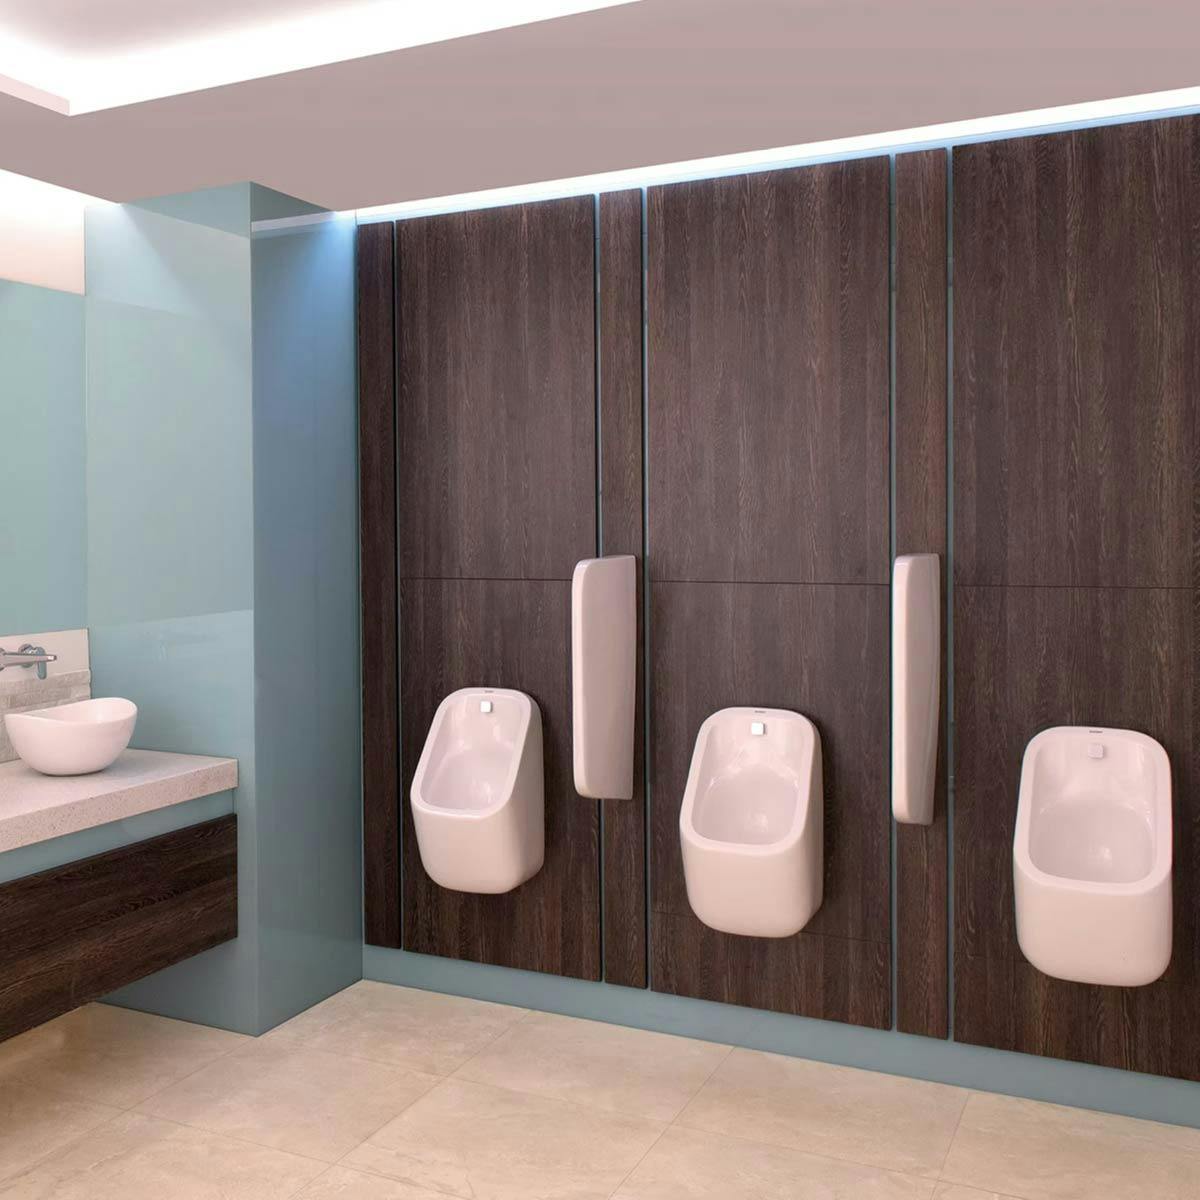 RAK Ceramics commercial bathroom solutions